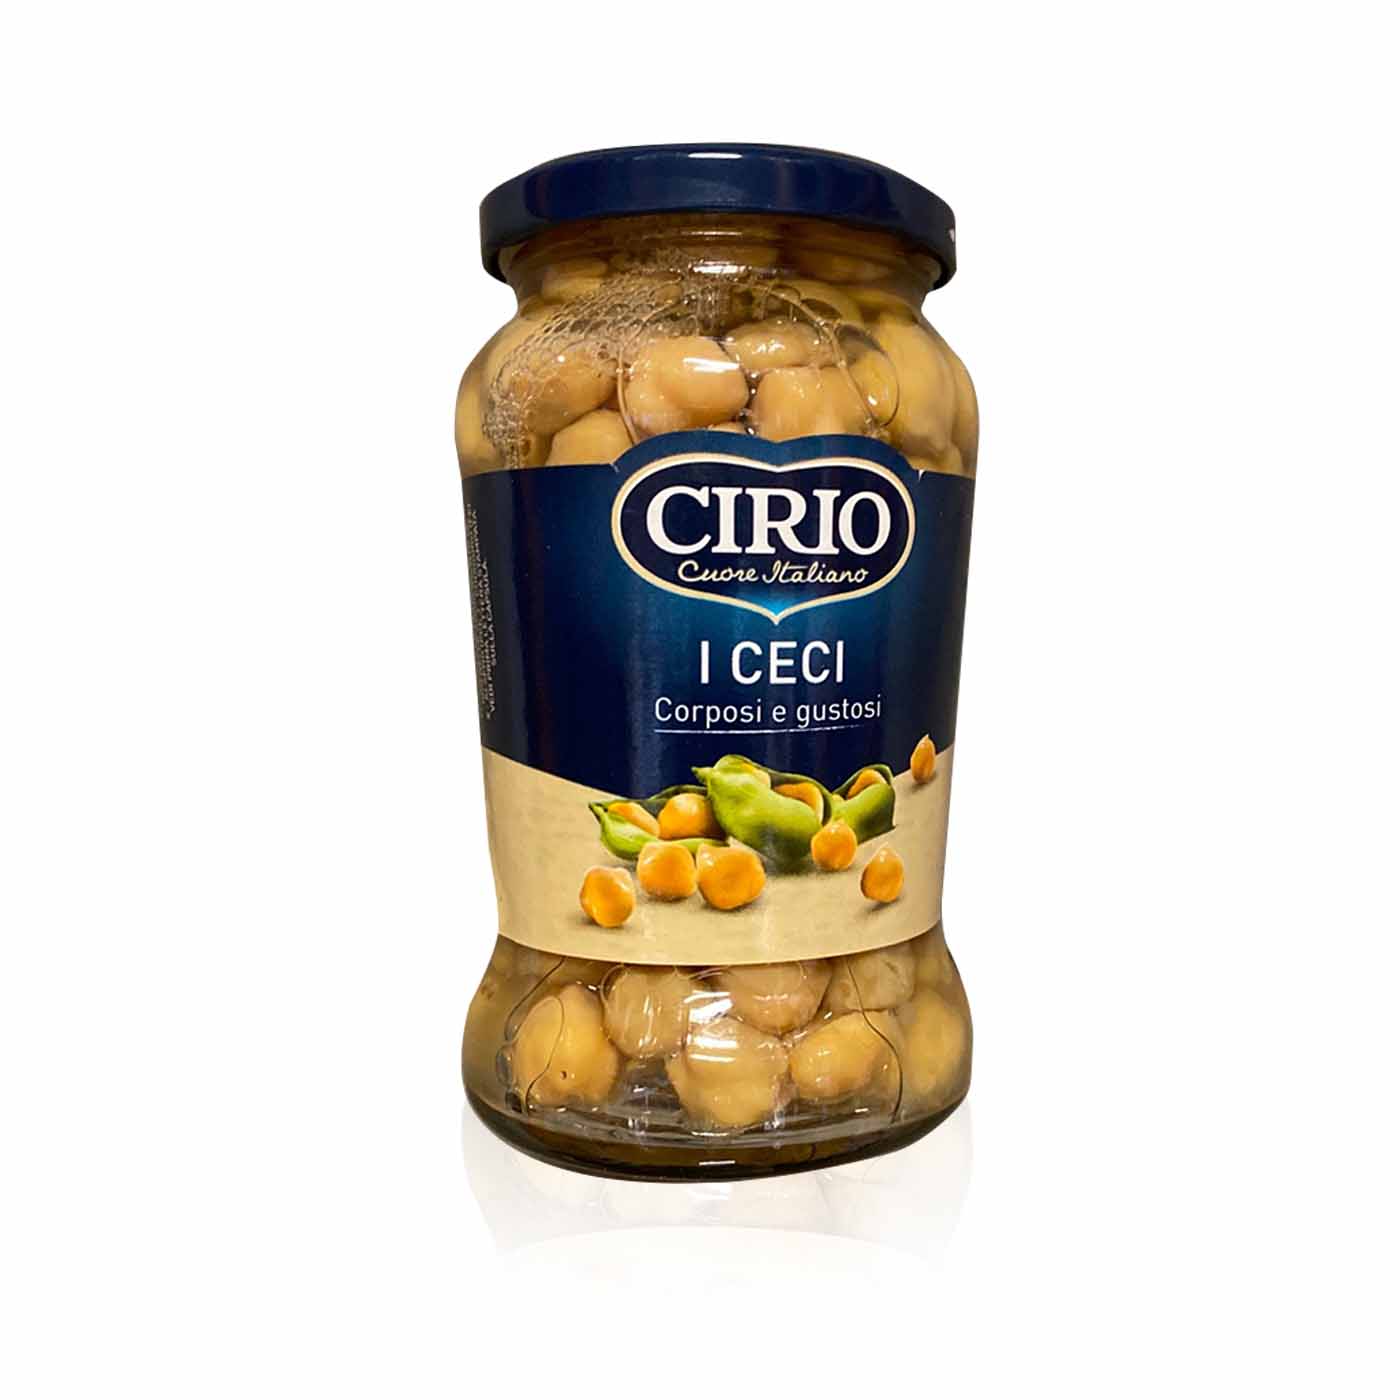 CIRIO - I Ceci - 0,37kg